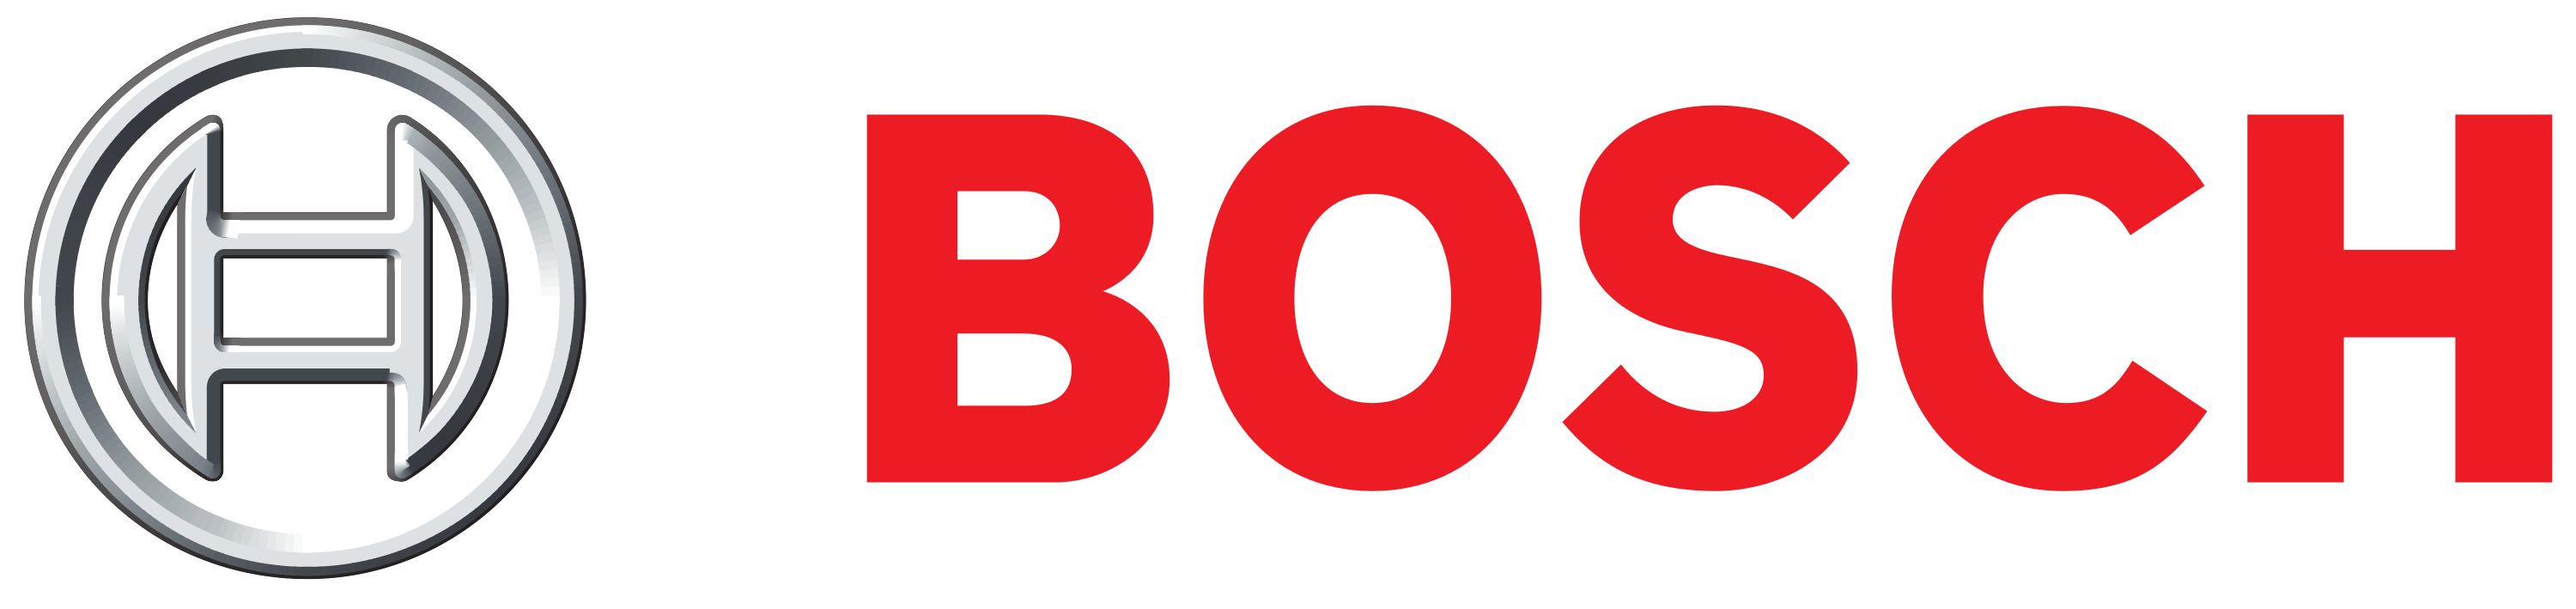 bosch-logo-39986